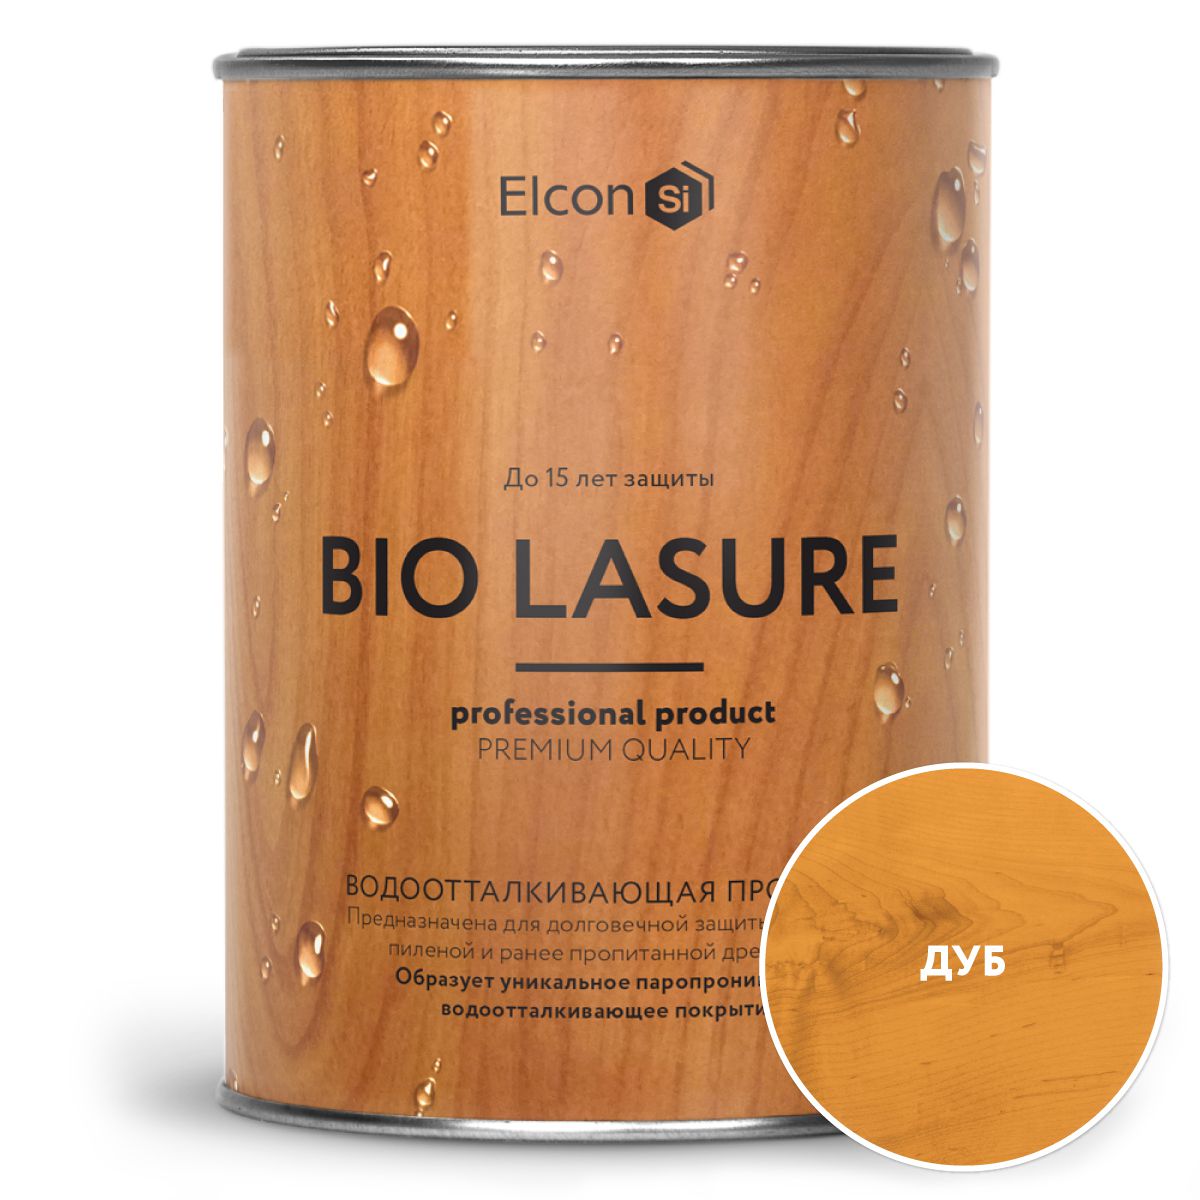 Водоотталкивающая пропитка для защиты дерева, Elcon Bio Lasure, дуб 0,9л пропитка для дерева elcon bio lasure водоотталкивающая орегон 2 л